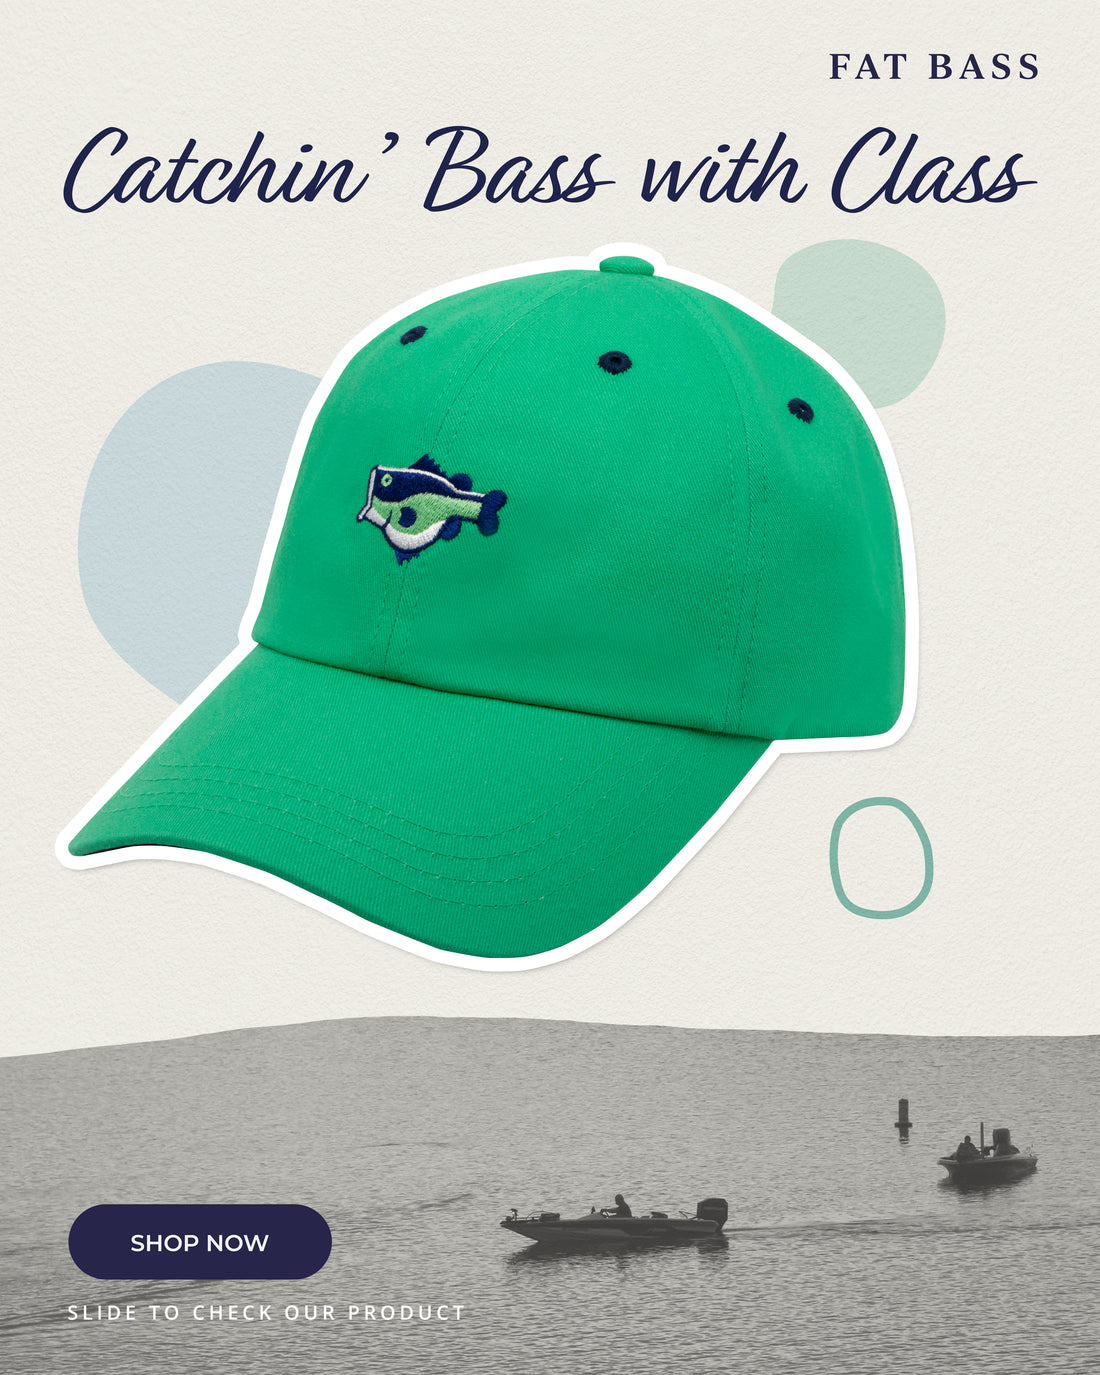 New! FAT BASS “Origins” Hat In Fat Bass Green!